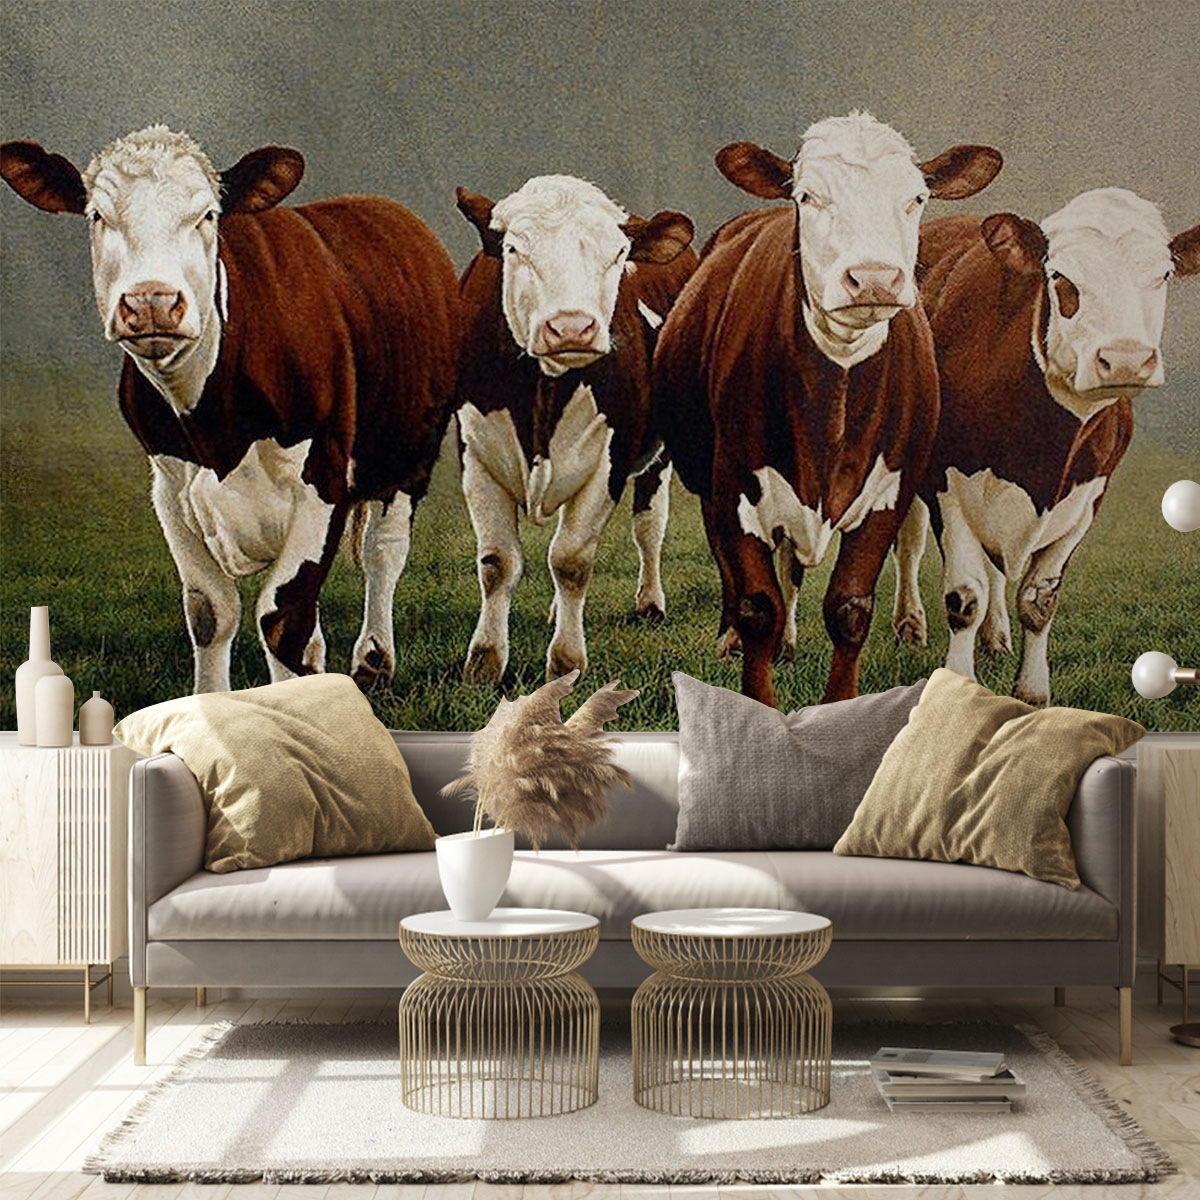 Four Cows Wall Mural_2_1